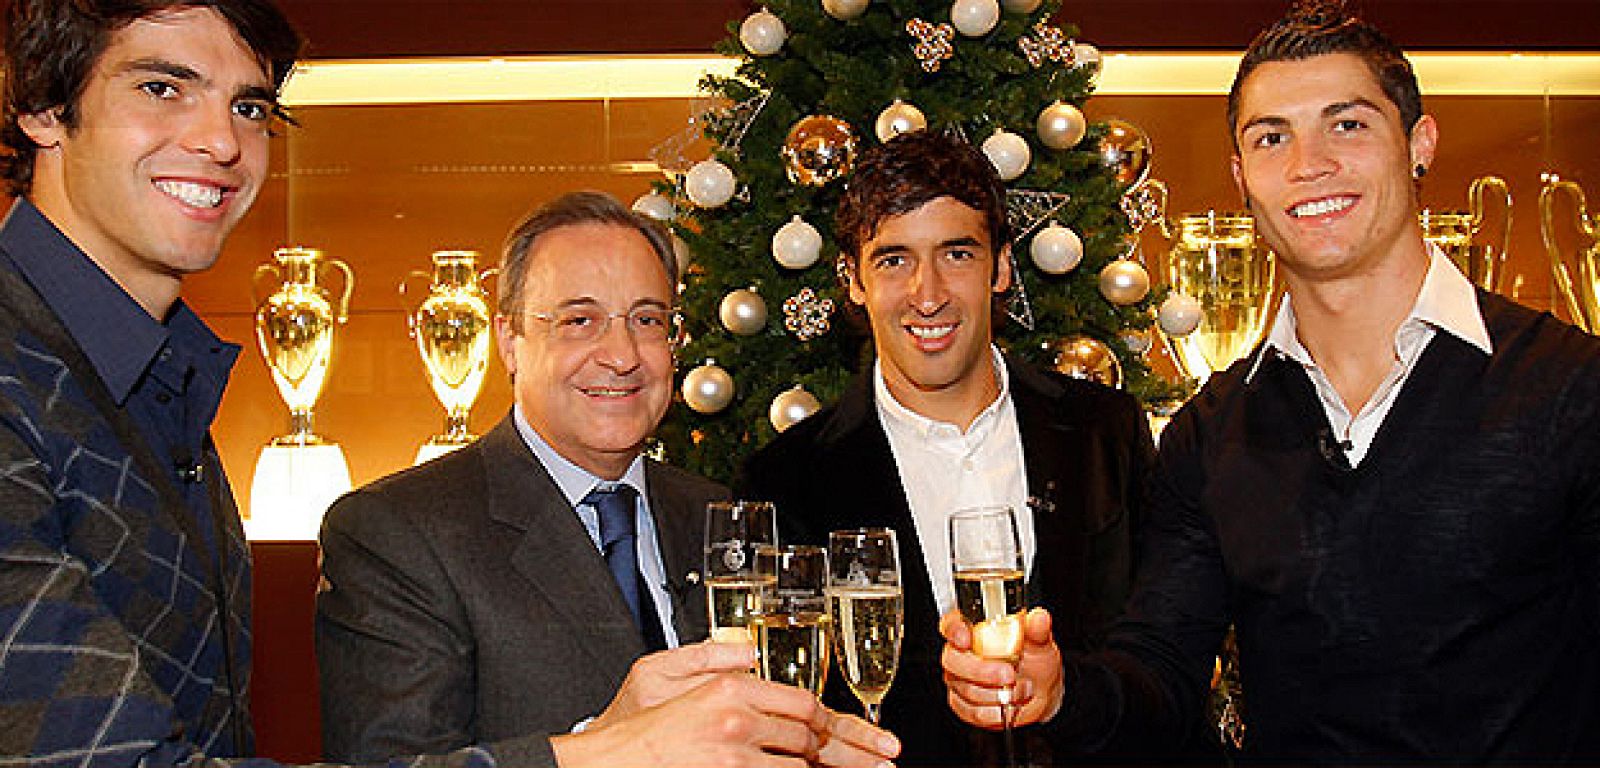 Raúl, Cristiano, Kaká y Florentino han felicitado las fiestas a todos los aficionados.